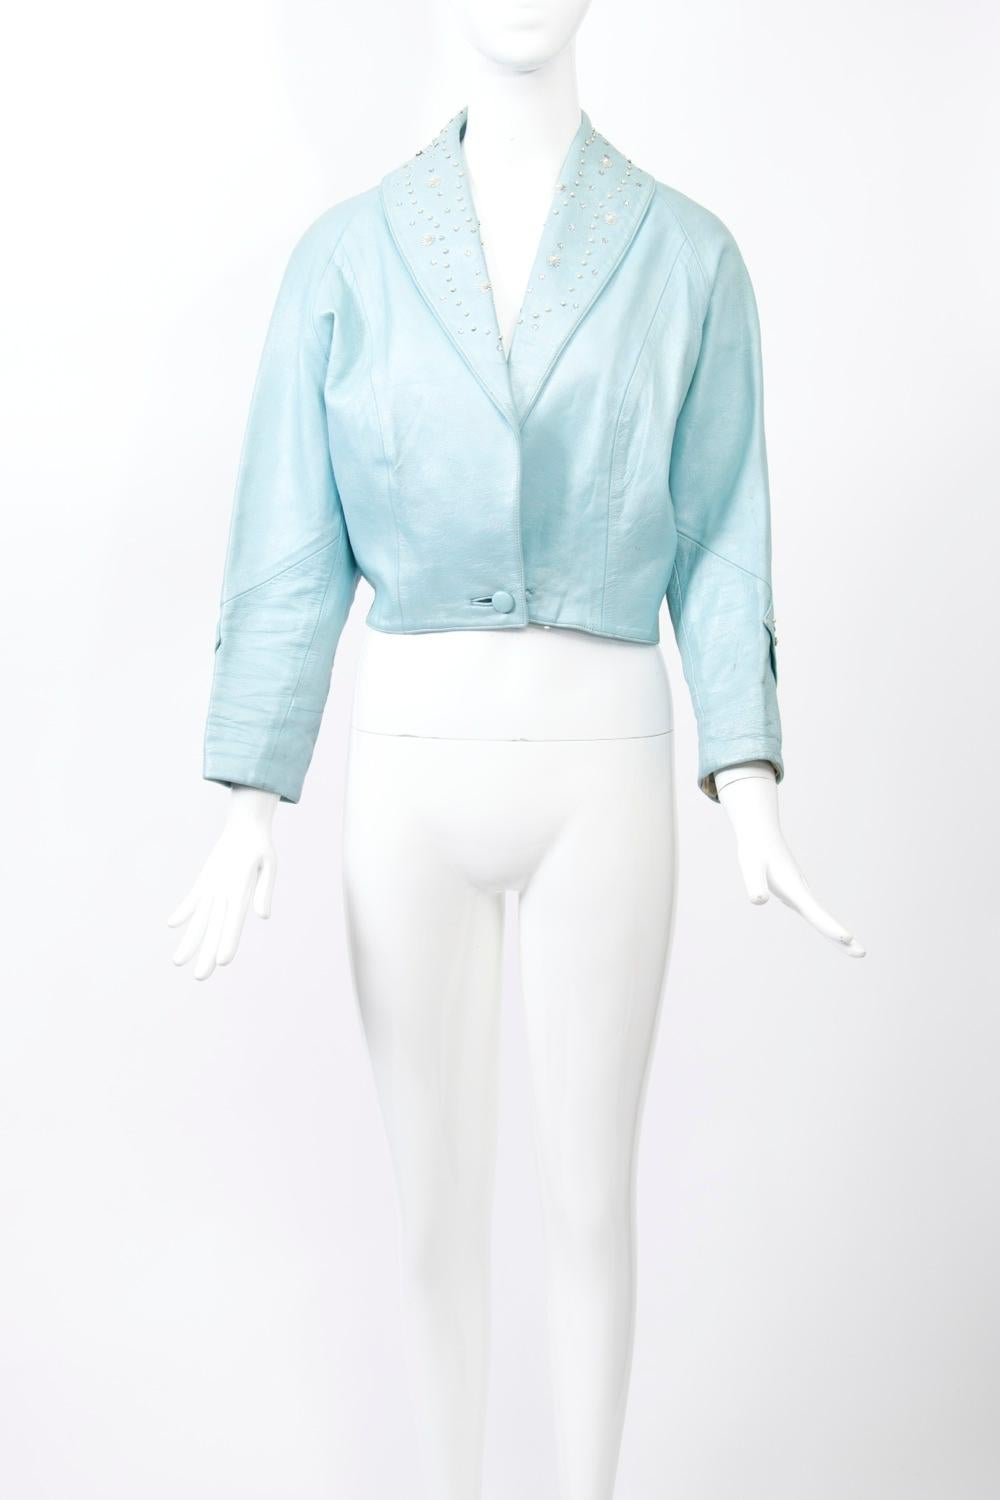 taillenlange Jacke aus blauem, perlmuttfarbenem Leder der 1950er Jahre. Der Schalkragen ist mit Perlen und Strasssteinen besetzt, ebenso wie ein Streifen unterhalb des Ellenbogens an den Raglanärmeln. Einzelner Knopf in der Taille. Geschwungener,